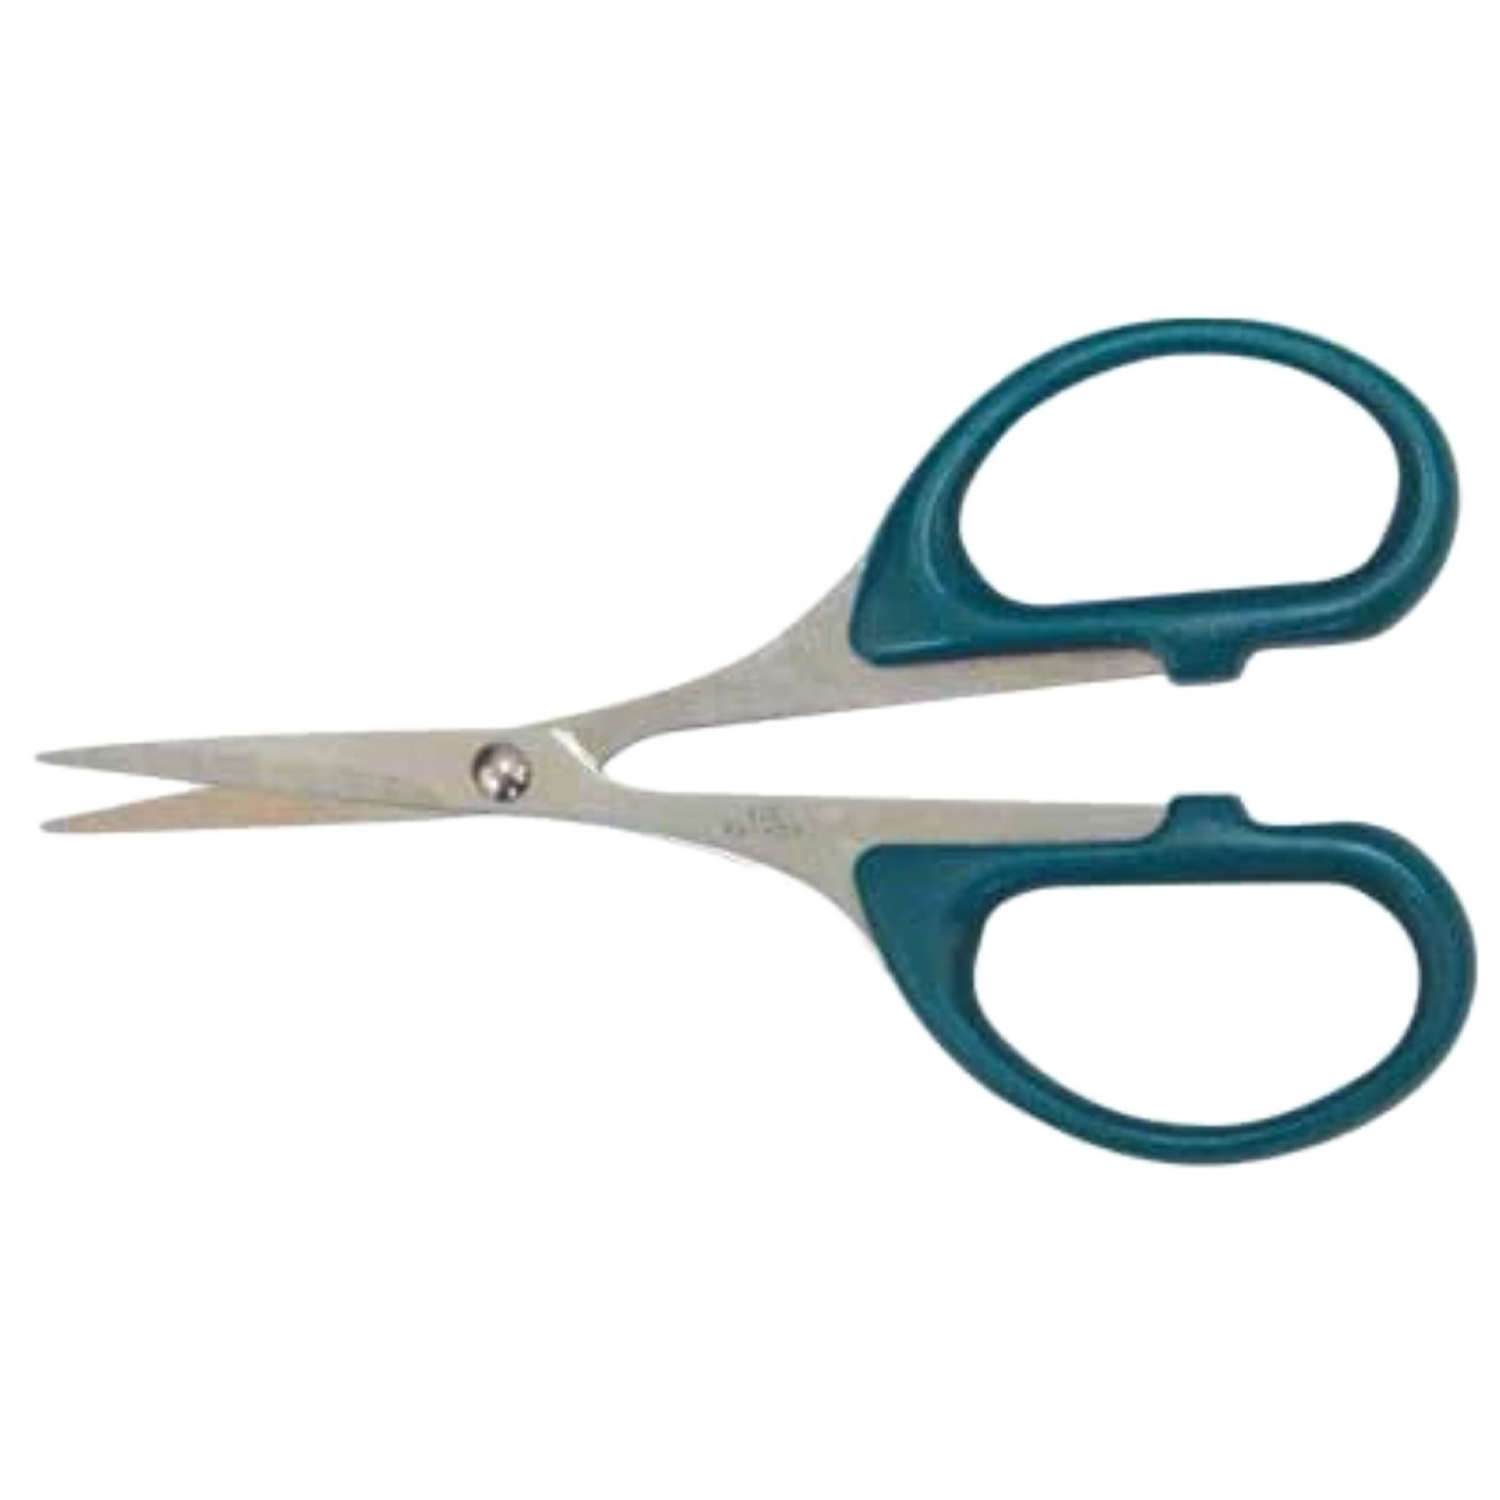 Scissors (Detail)